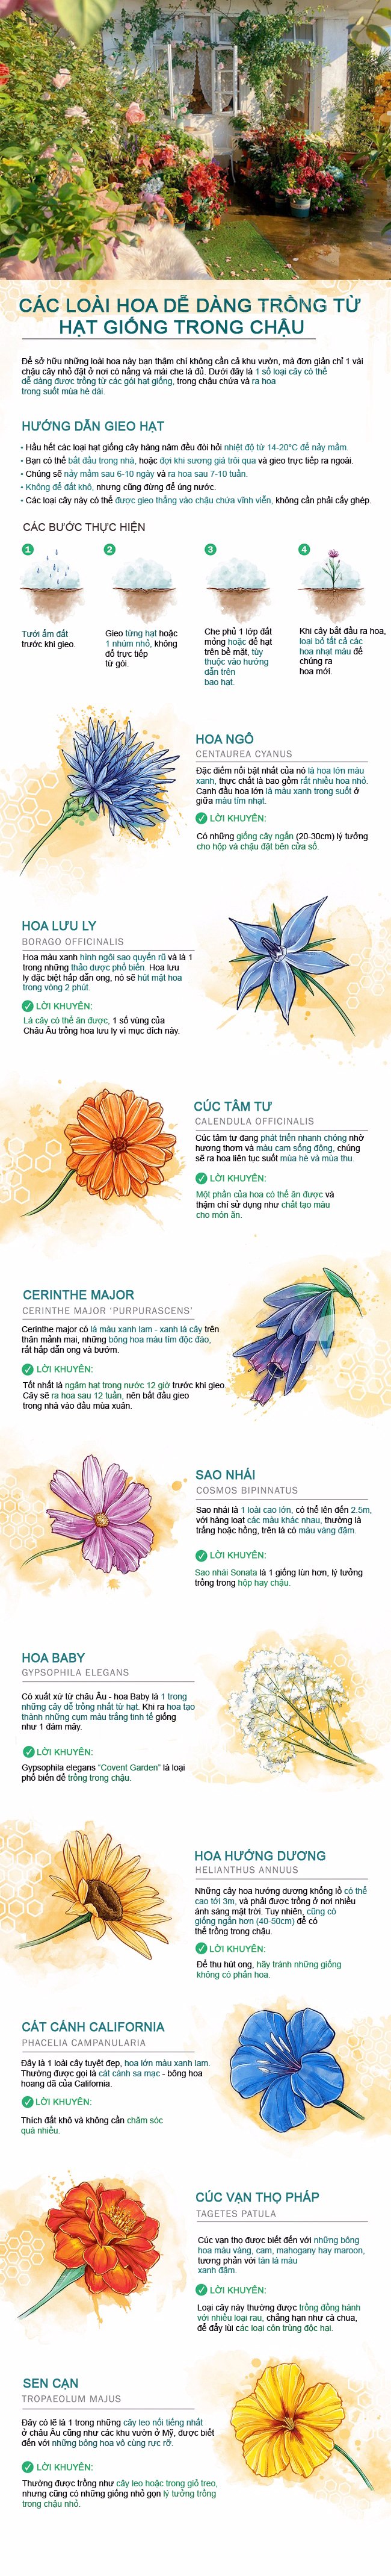 10 loại hoa cực dễ trồng từ hạt giống mang thêm hương sắc cho khu vườn nhỏ của bạn - Ảnh 1.